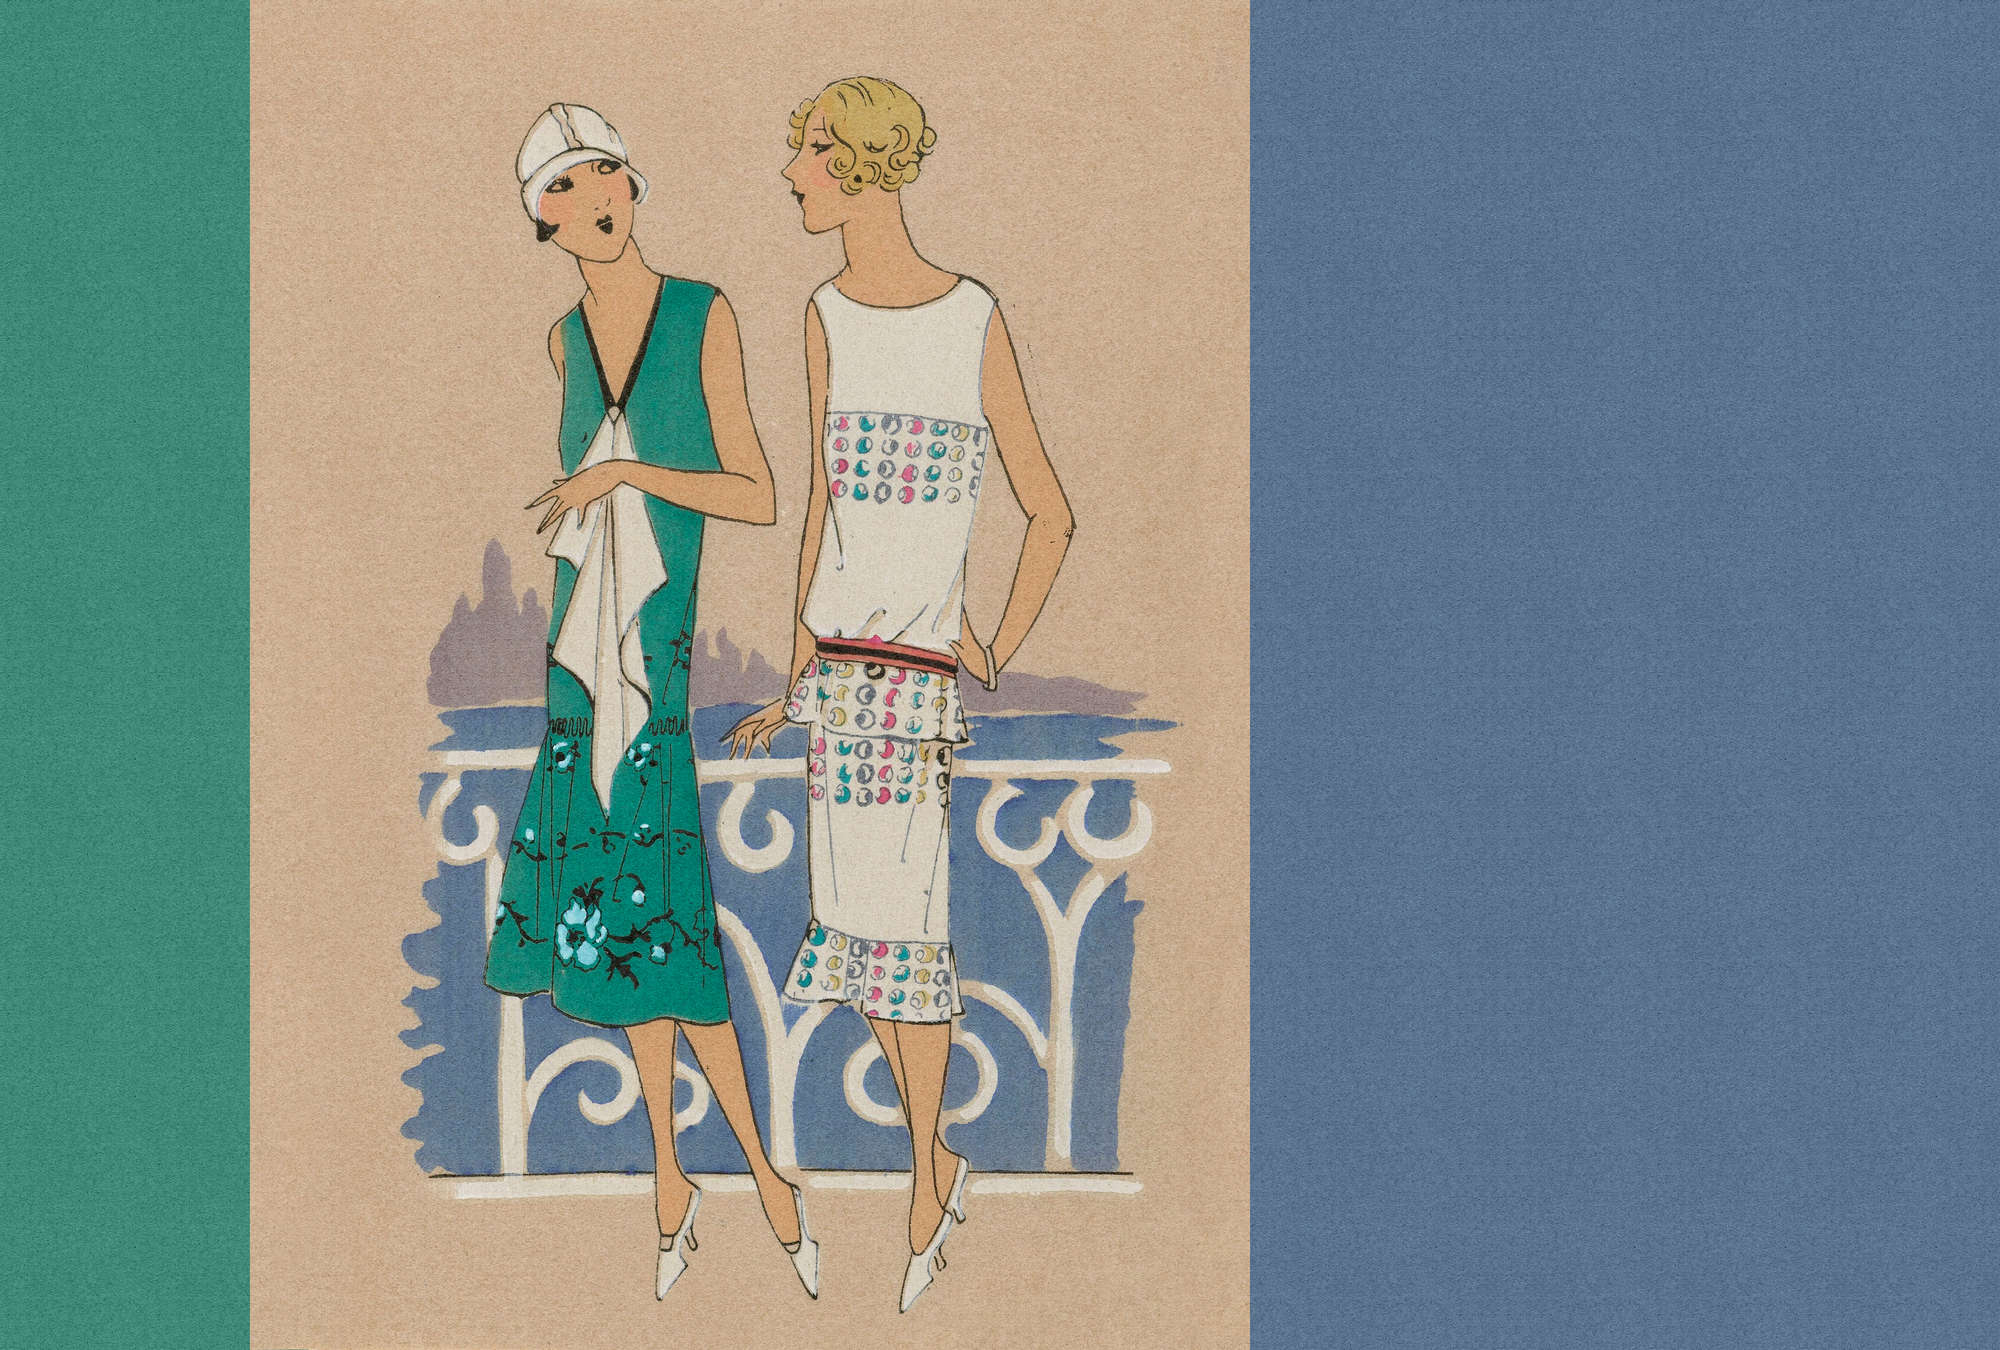             Parisienne 3 - Papier peint rétro mode imprimé années 20 en bleu & vert
        